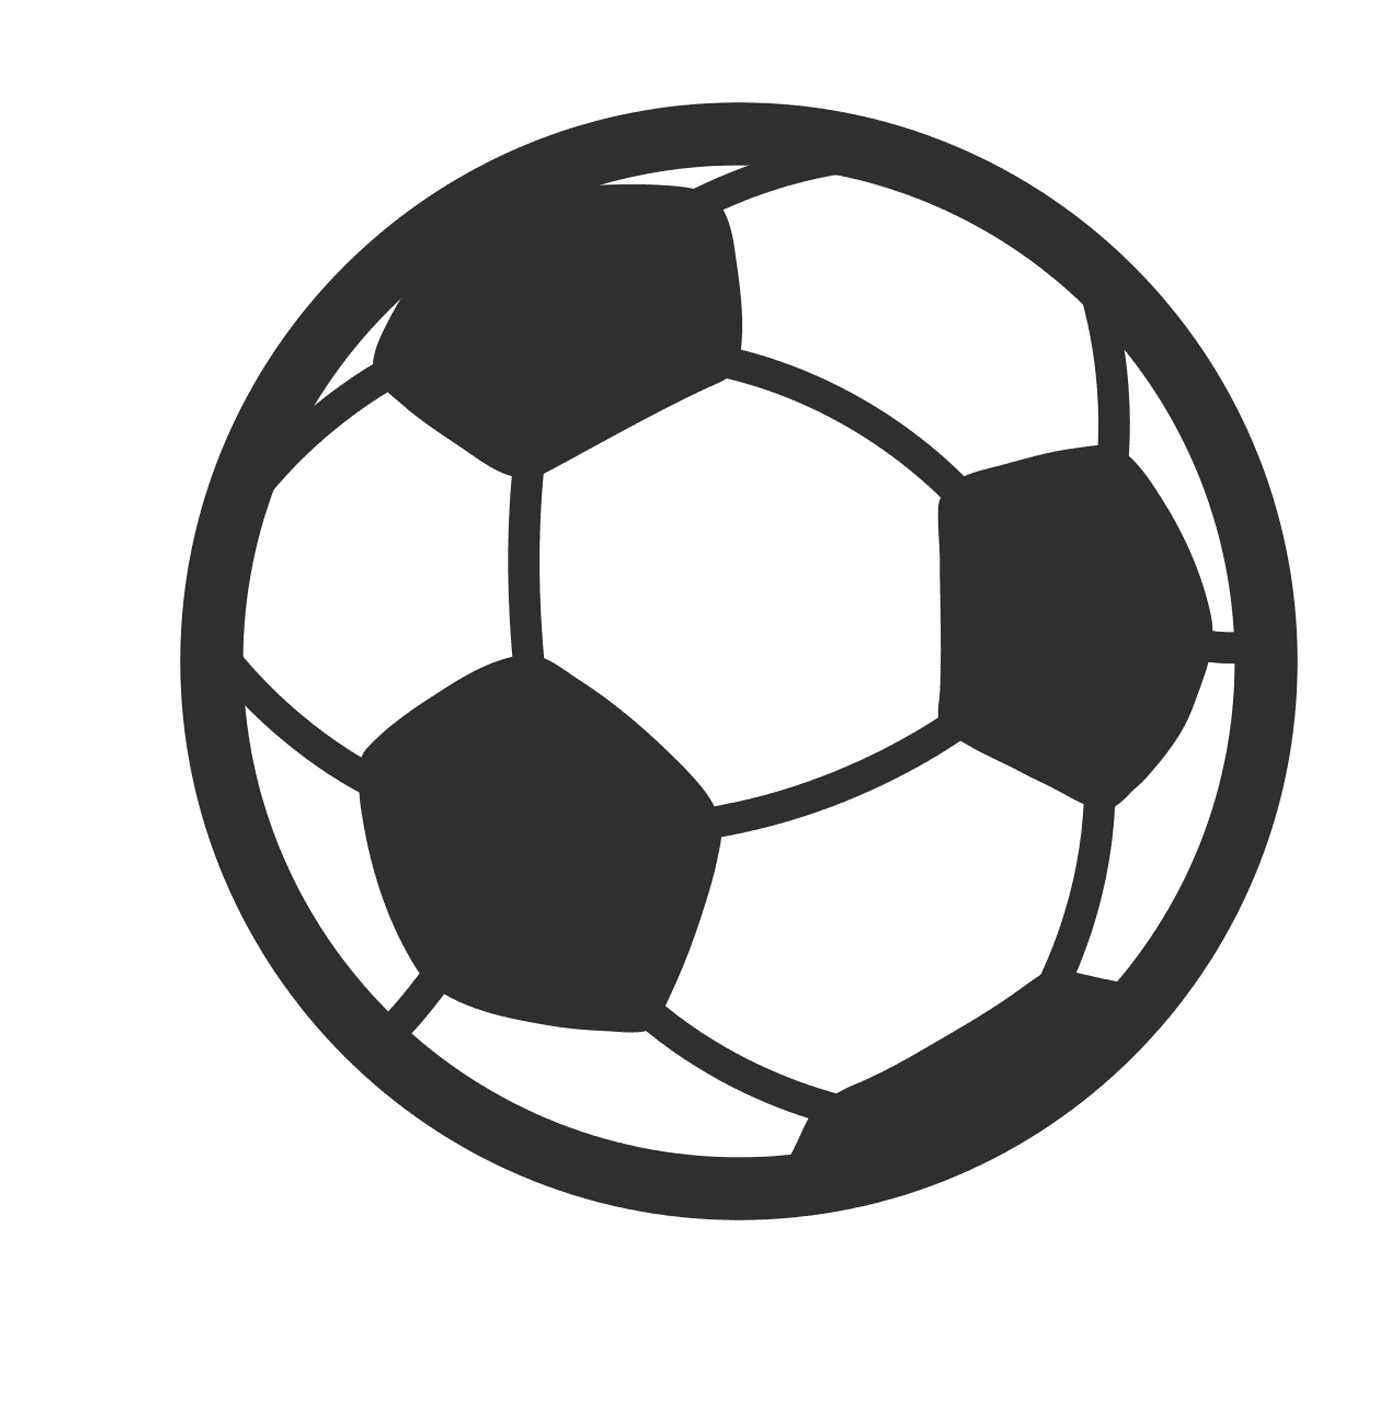  Una pelota de fútbol 